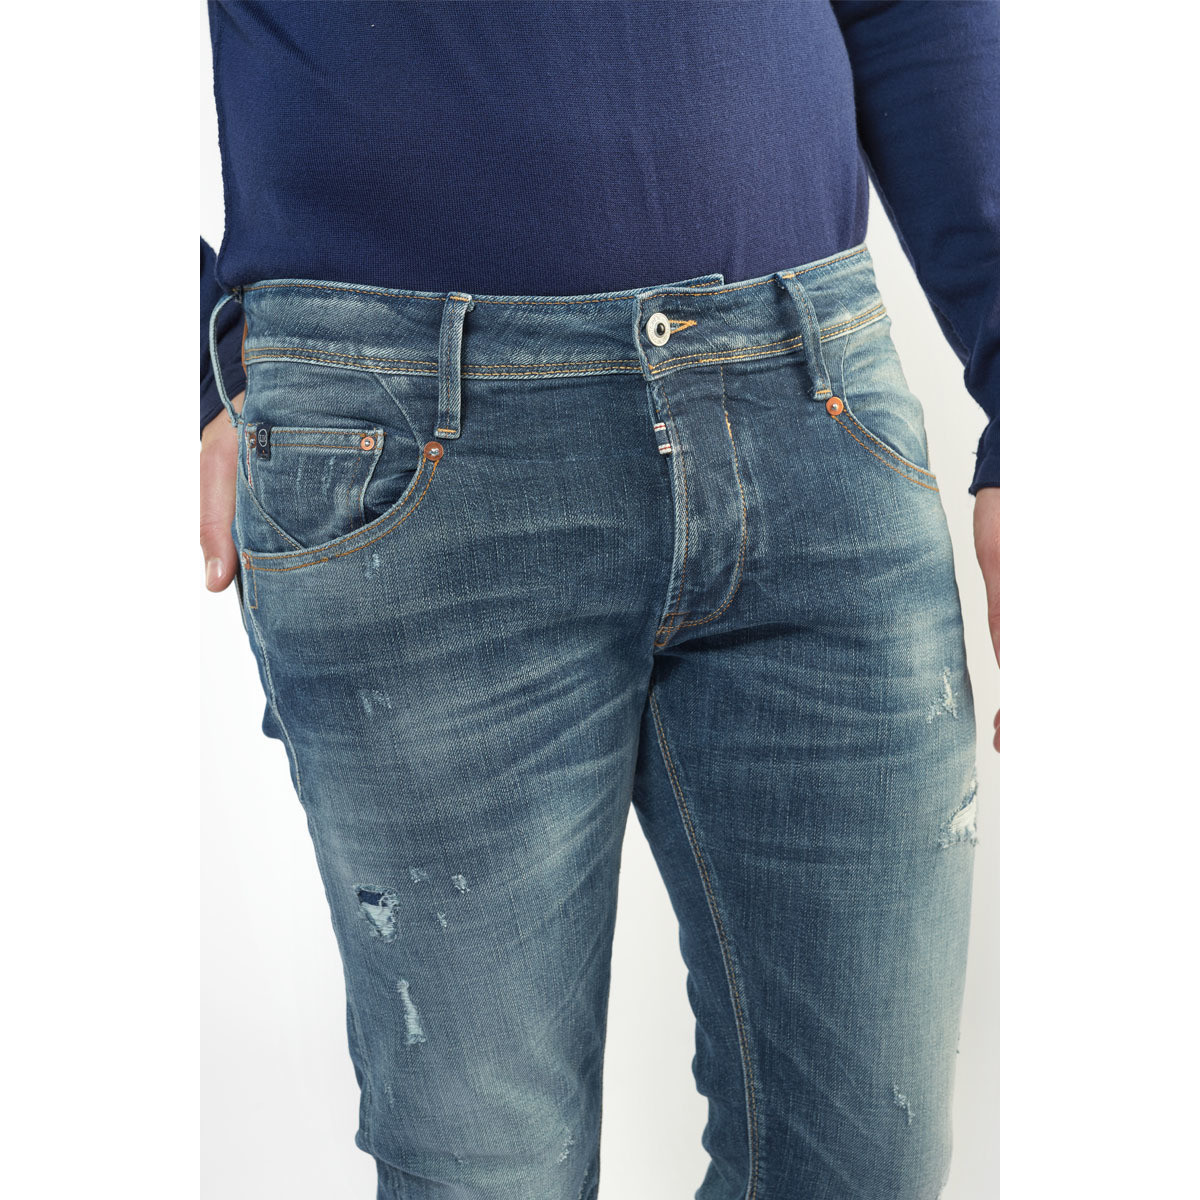 Le Temps des Cerises Bleu Niko 700/11 adjusted jeans destroy vintage bleu 2RMJCaot